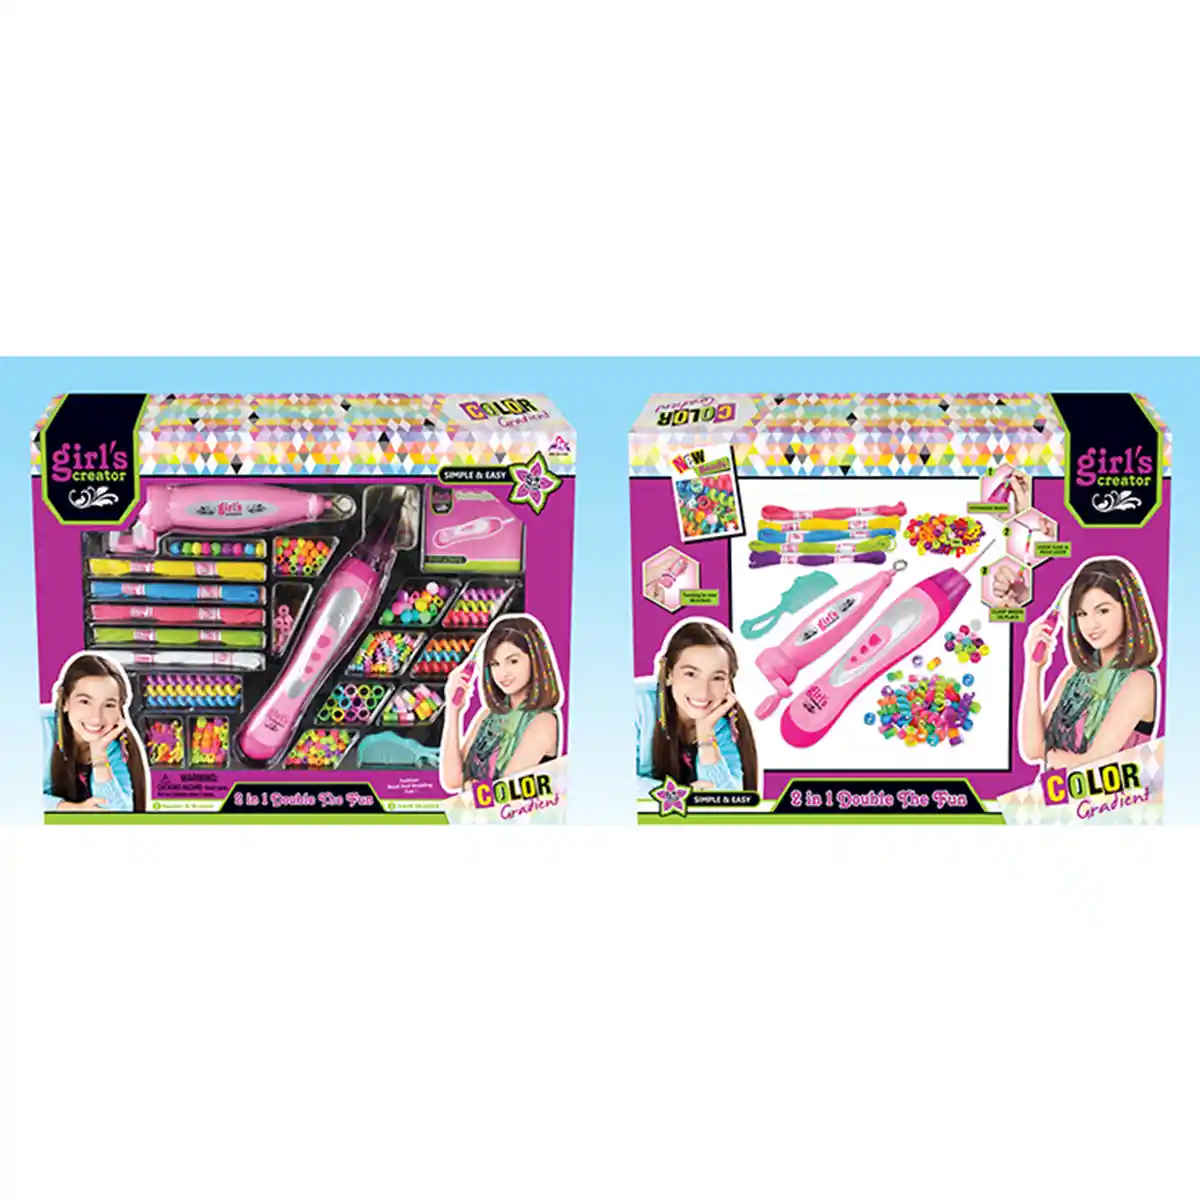 Girls Creator - 2in1 Double The Fun Braiding Kit